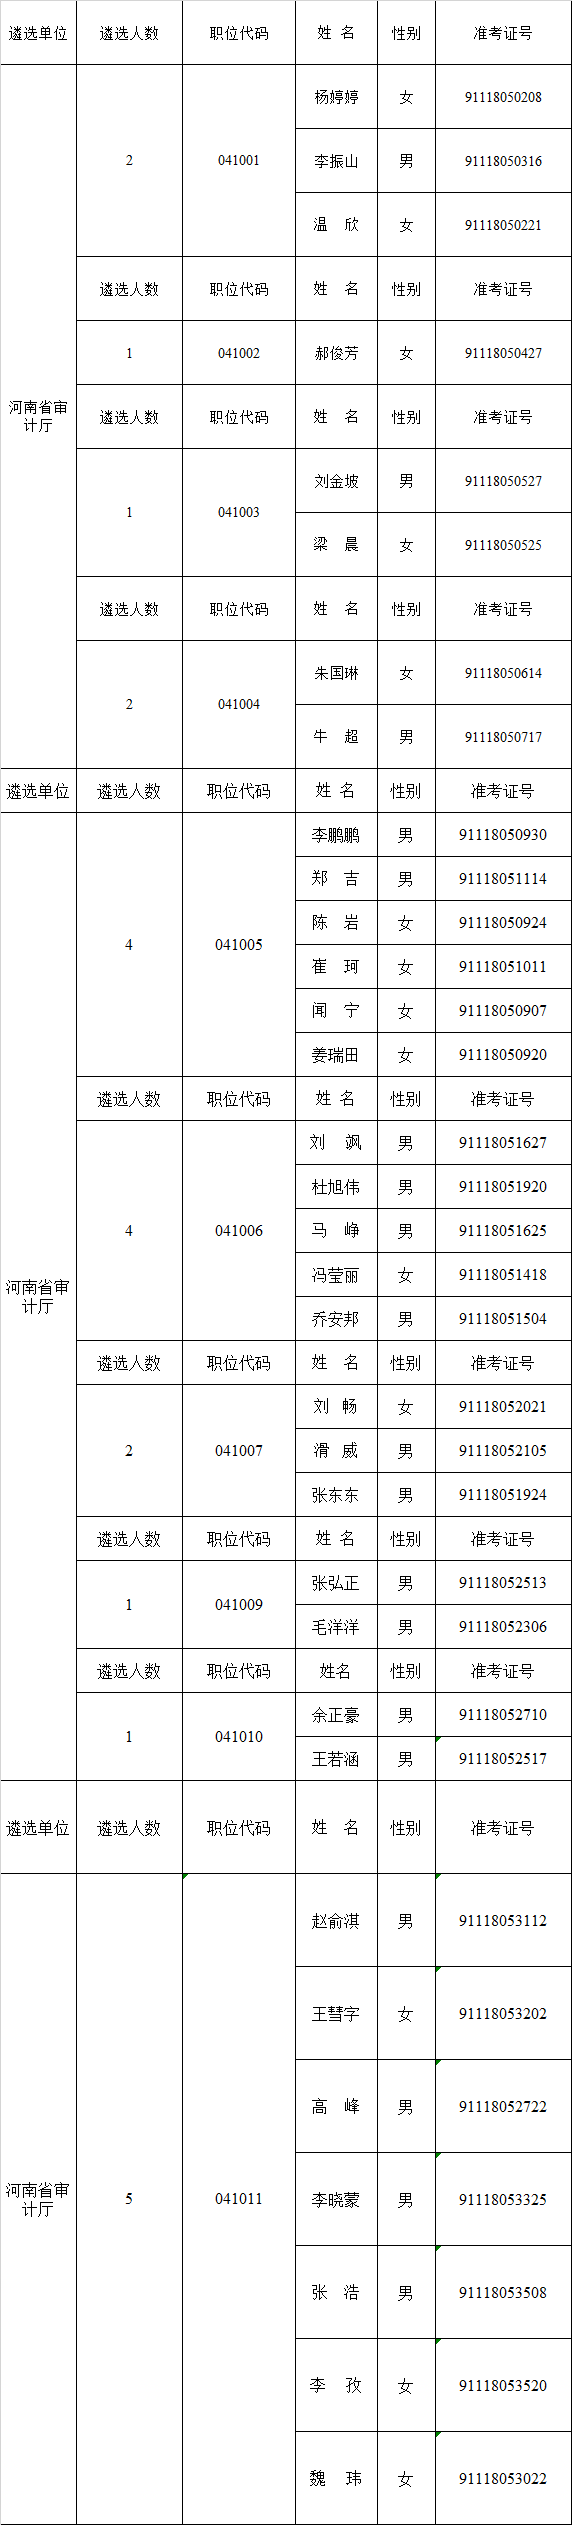 河南省审计厅考察名单.png